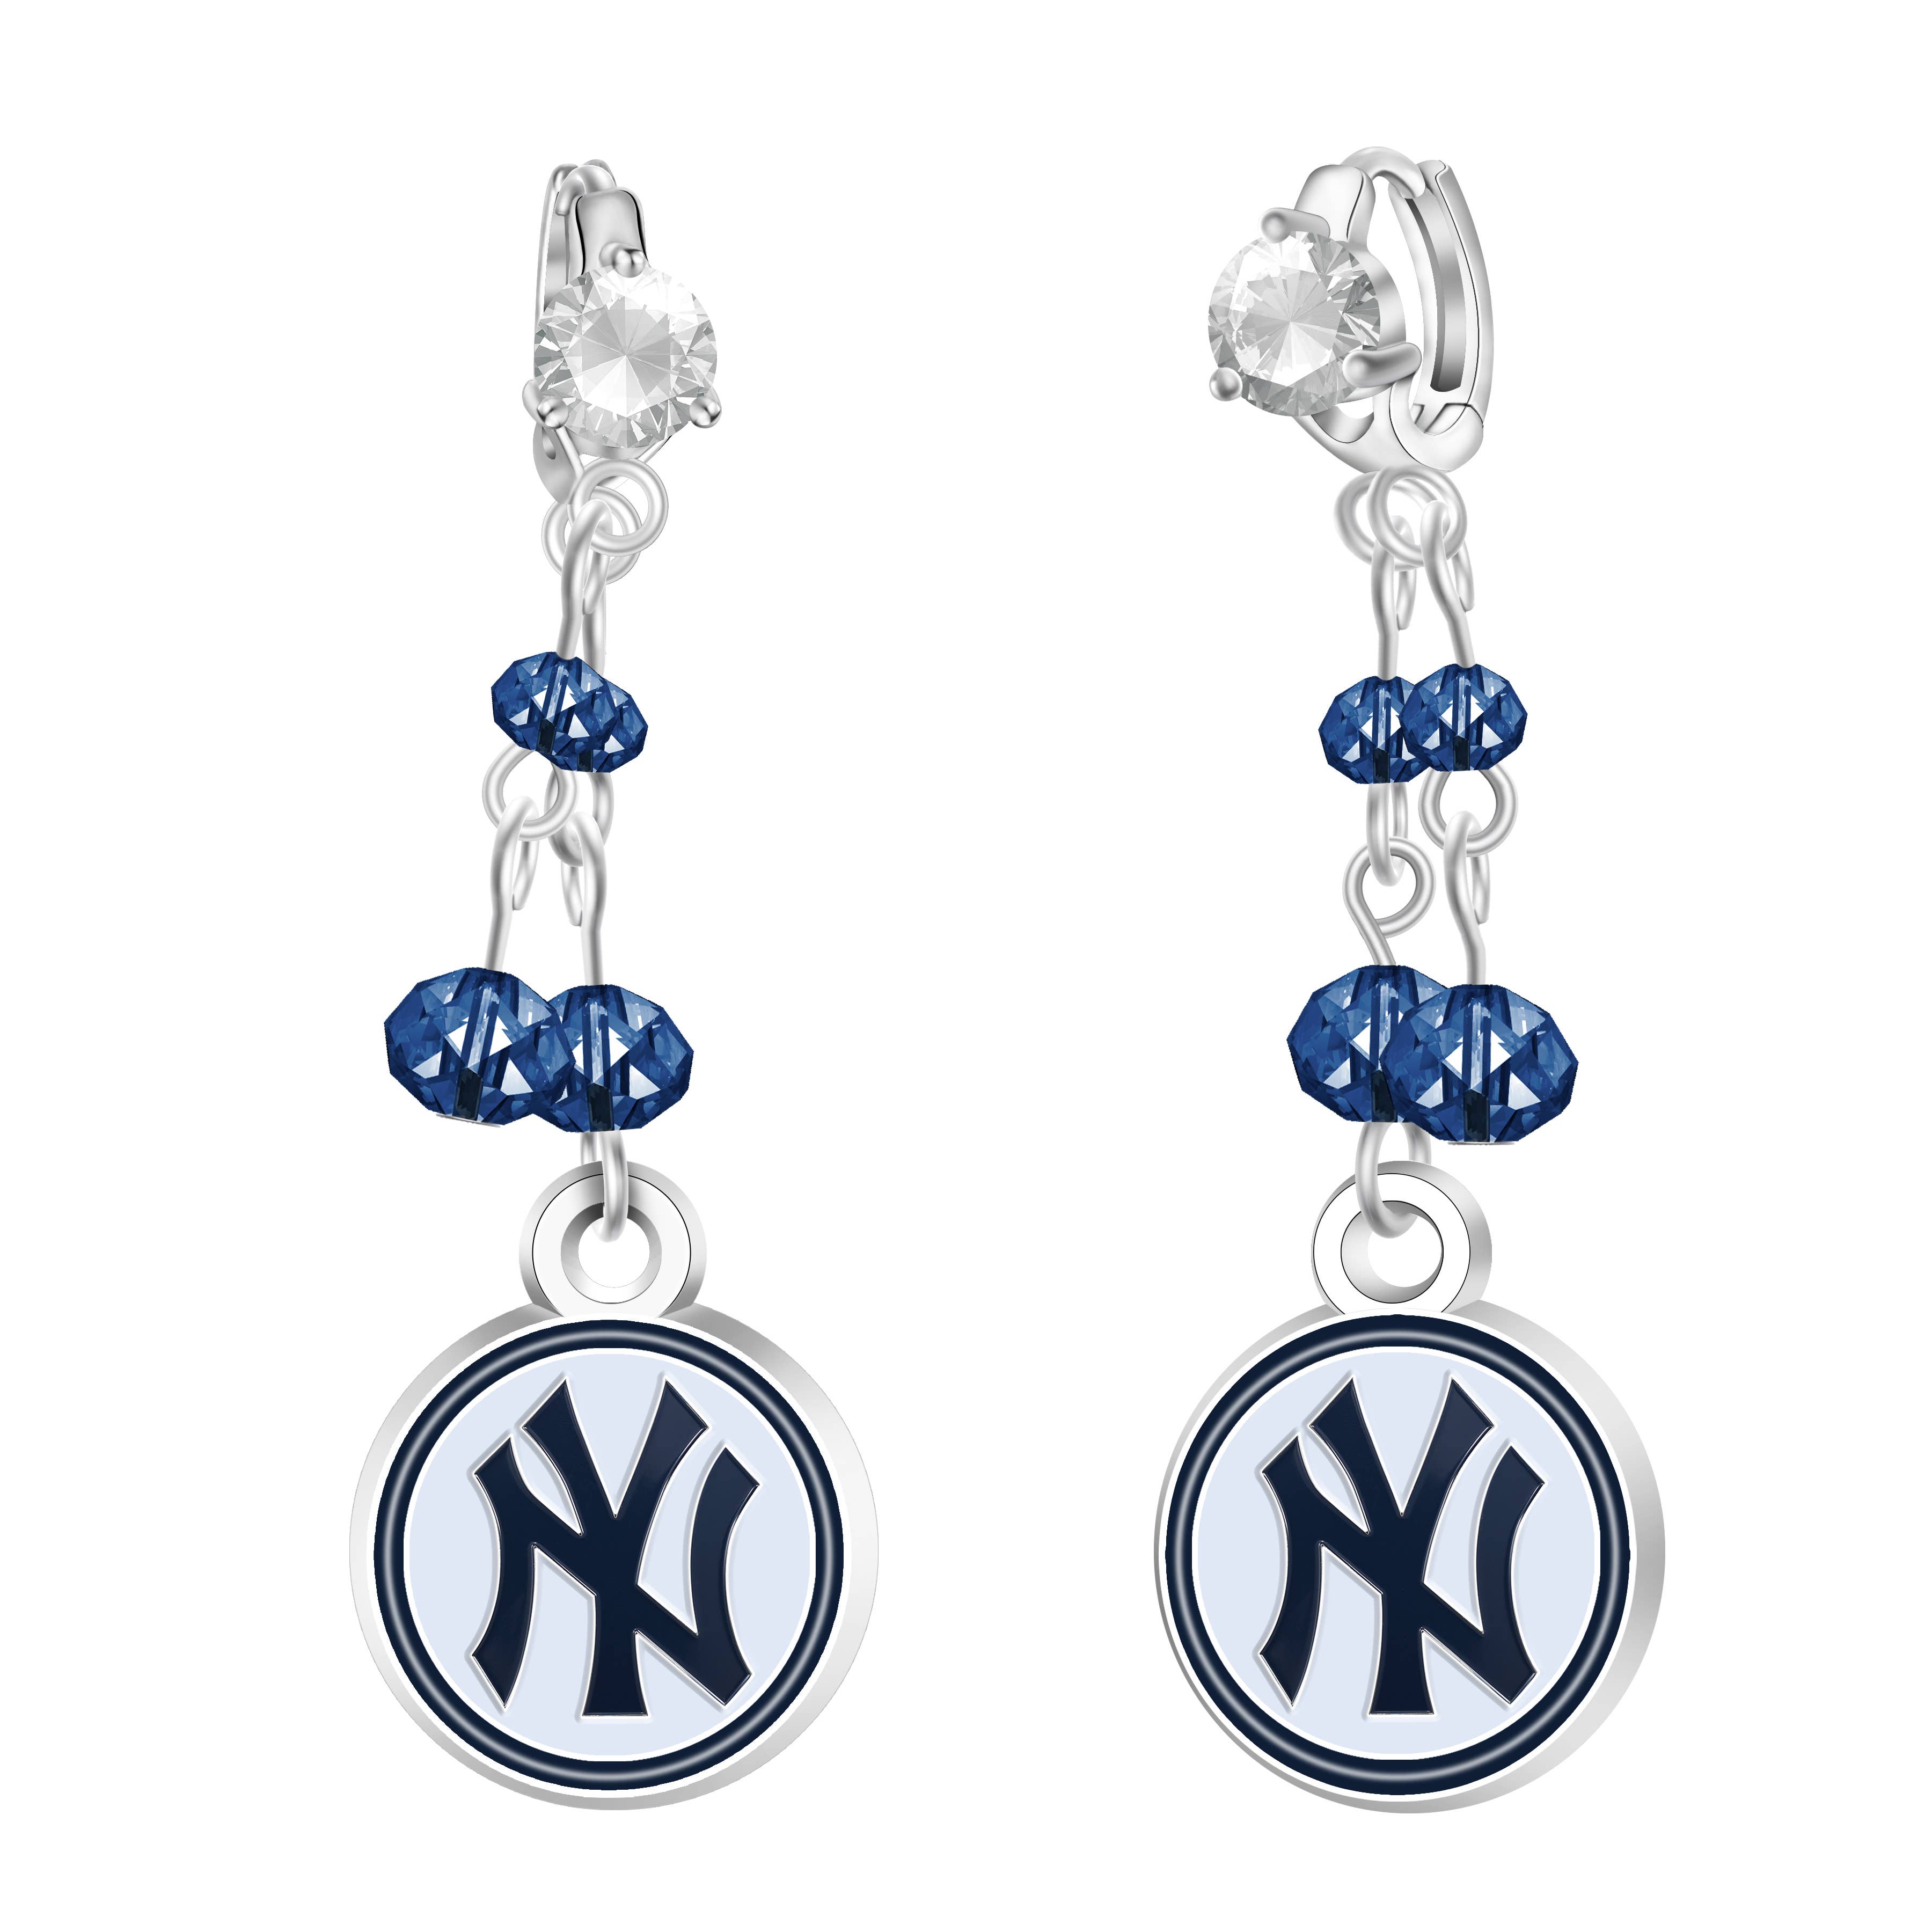 Yankees Baseball Oval Earrings Teardrop New York Yankees Leather Earrings 2 Leather Earrings Yankees Earrings New York Earrings